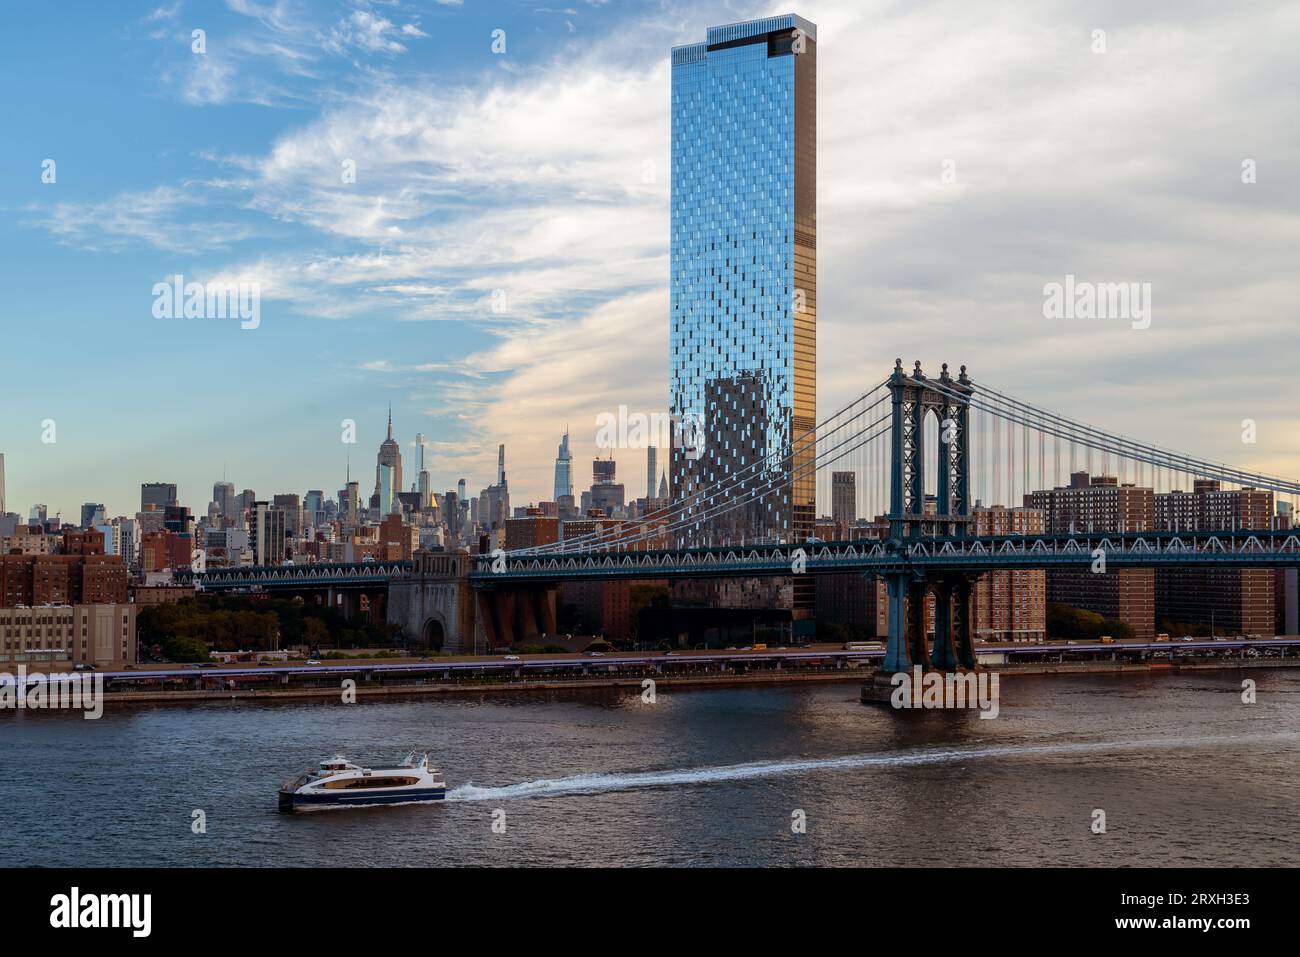 Vue unique sur le pont de Manhattan et le bateau New york Ferry qui relie Brooklyn à Manhattan. C'est un pont à 2 niveaux pour le métro, busse Banque D'Images